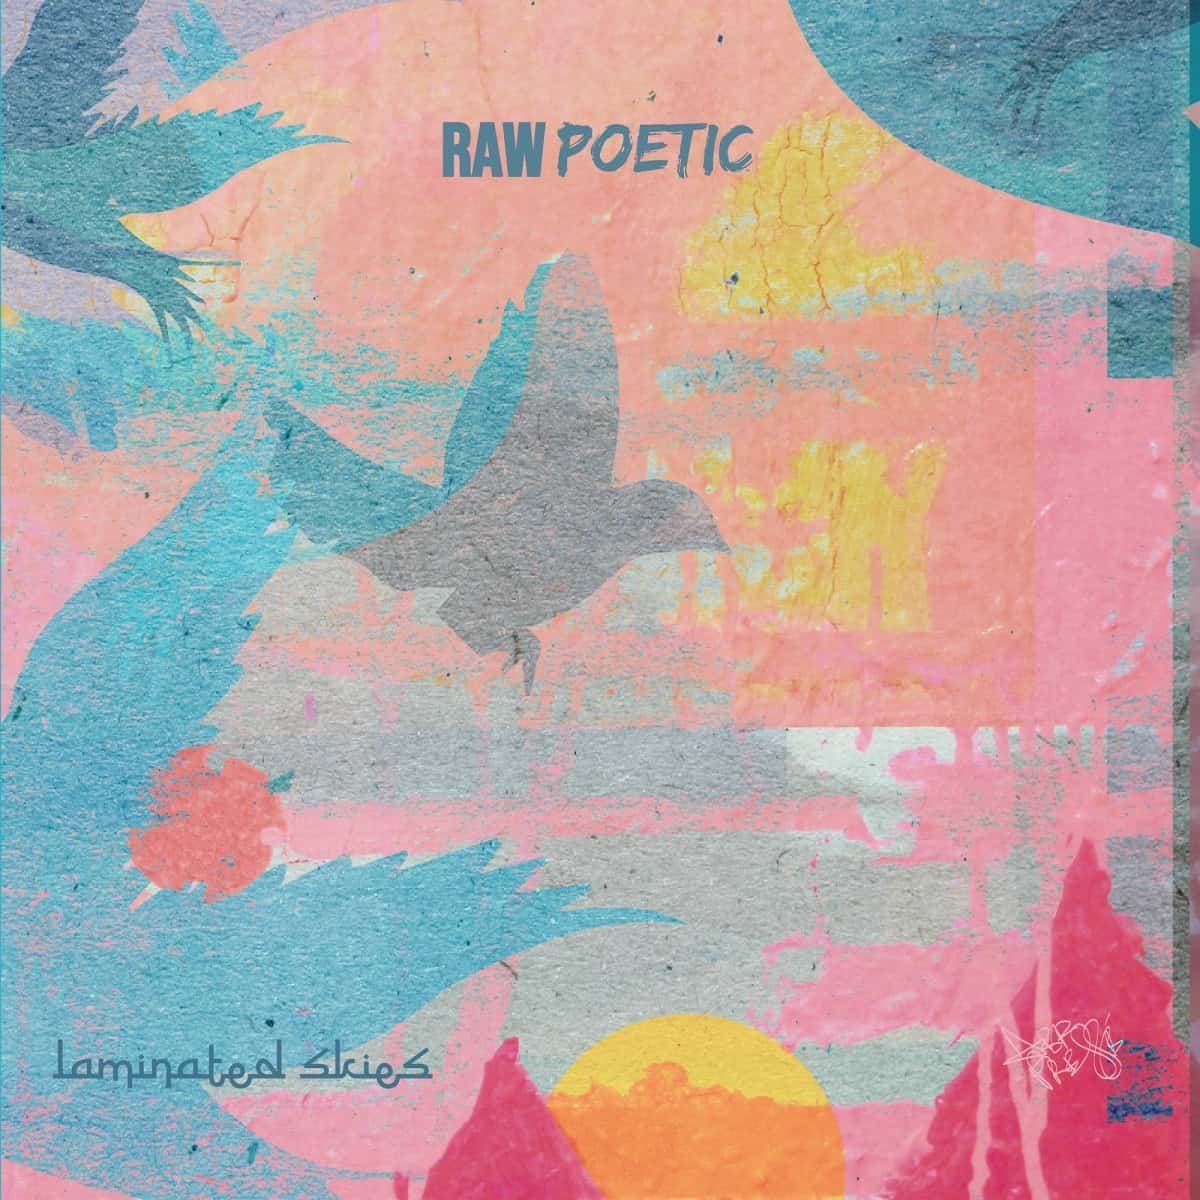 ALBUM ANNOUNCEMENT // Raw Poetic & Damu The Fudgemunk – Laminated Skies